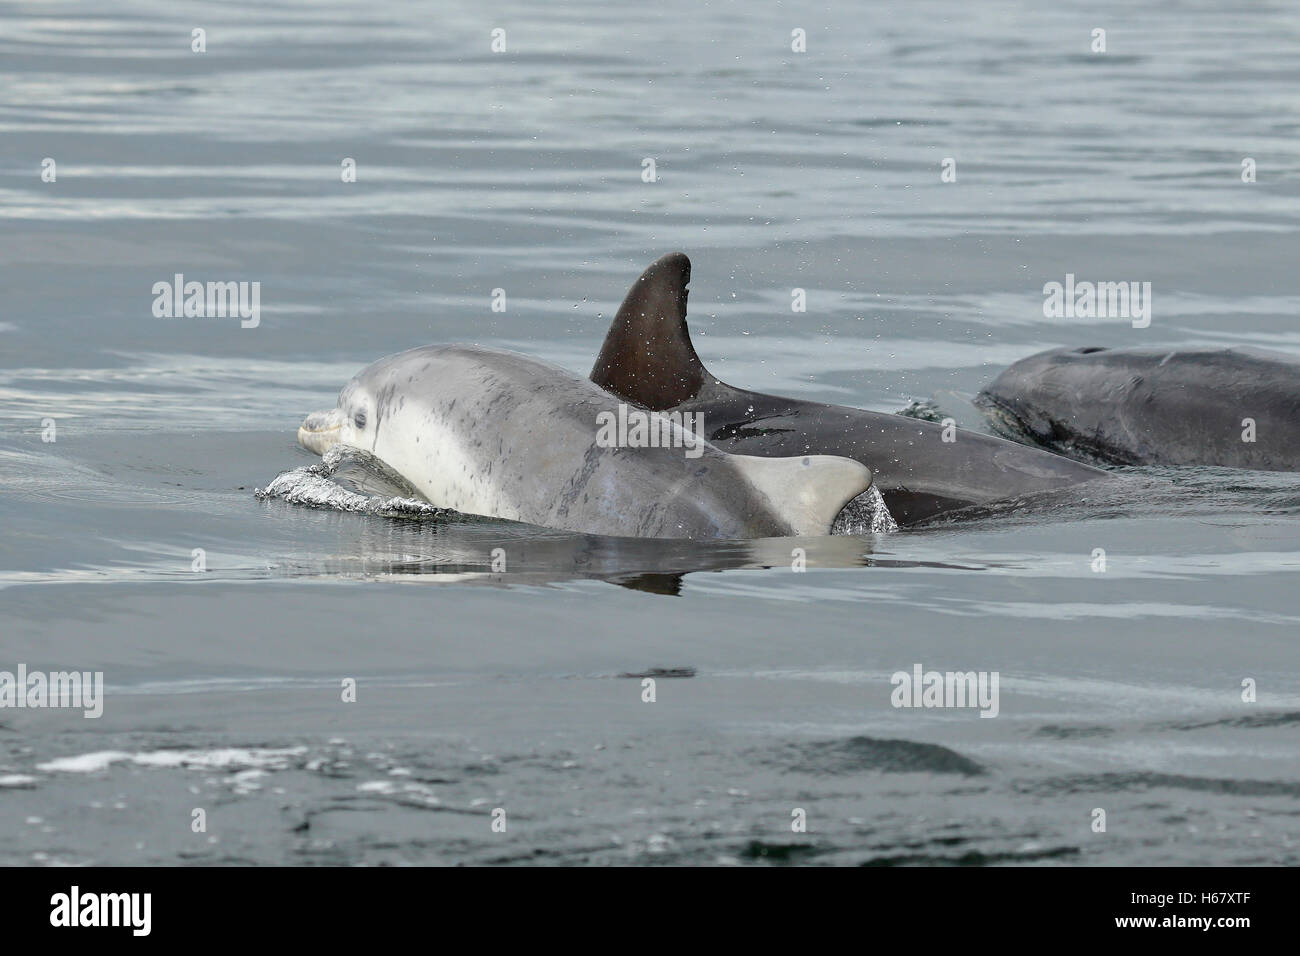 Un grand dauphin surfaces bébé de respirer à côté de sa mère, Moray, Ecosse Banque D'Images